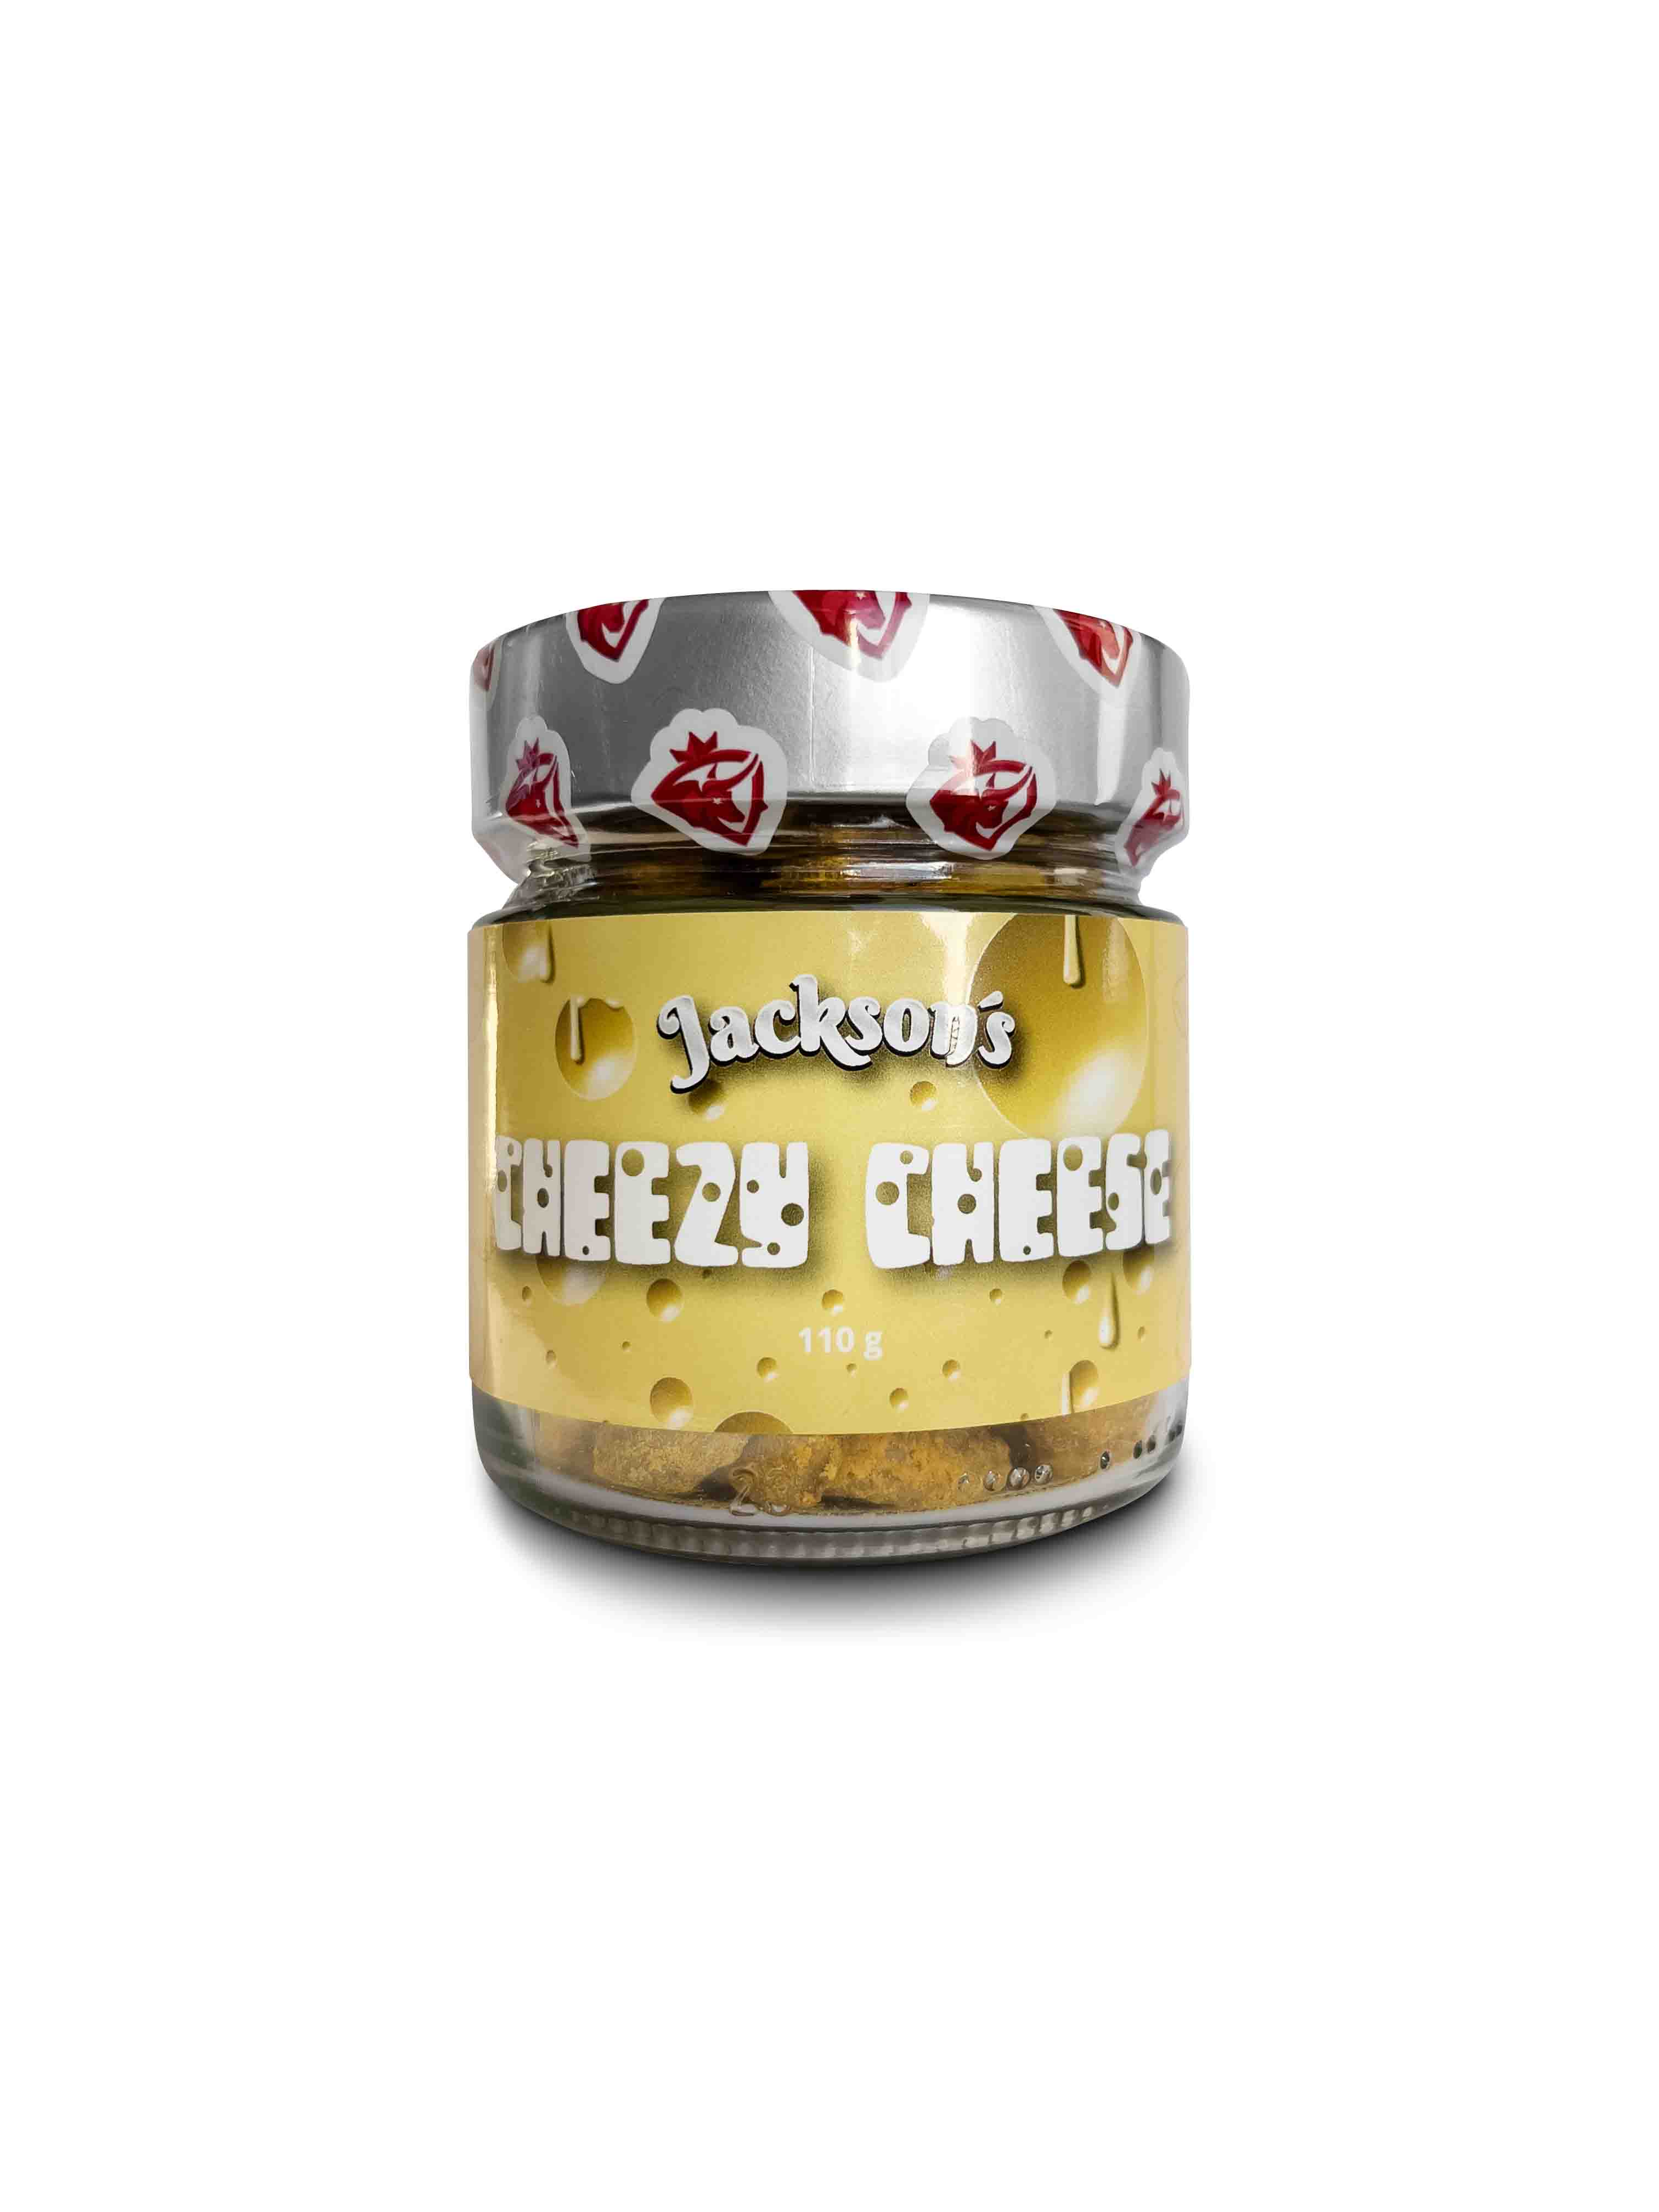 Jackson's Cheezy cheese (kešu oříšky s příchutí chedaru)